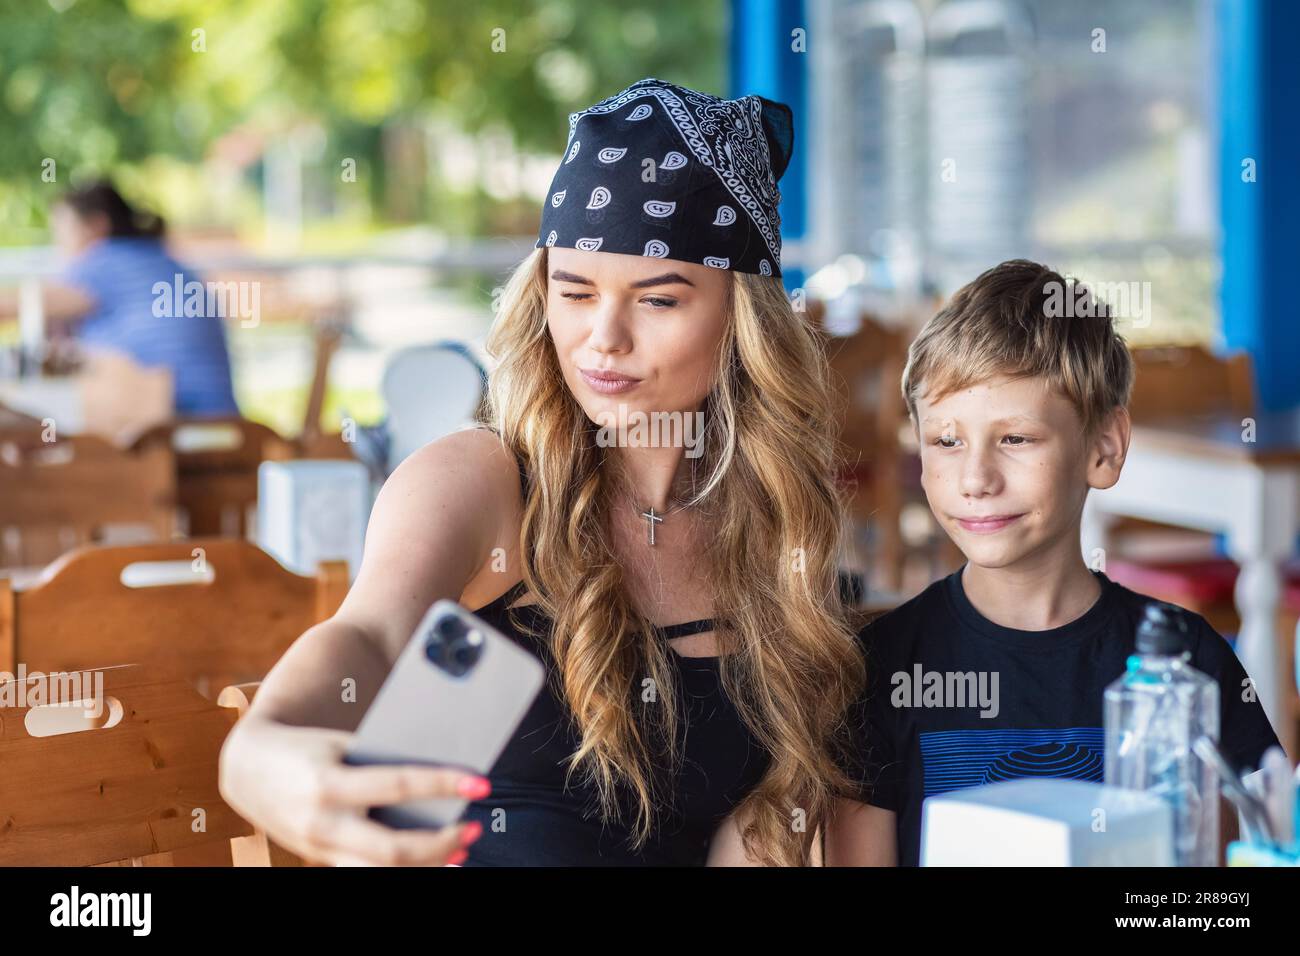 Coole Hipster-Mutter der Millennials macht Selfie, während sie mit ihrem wunderschönen Sohn im Restaurant lächelt Stockfoto